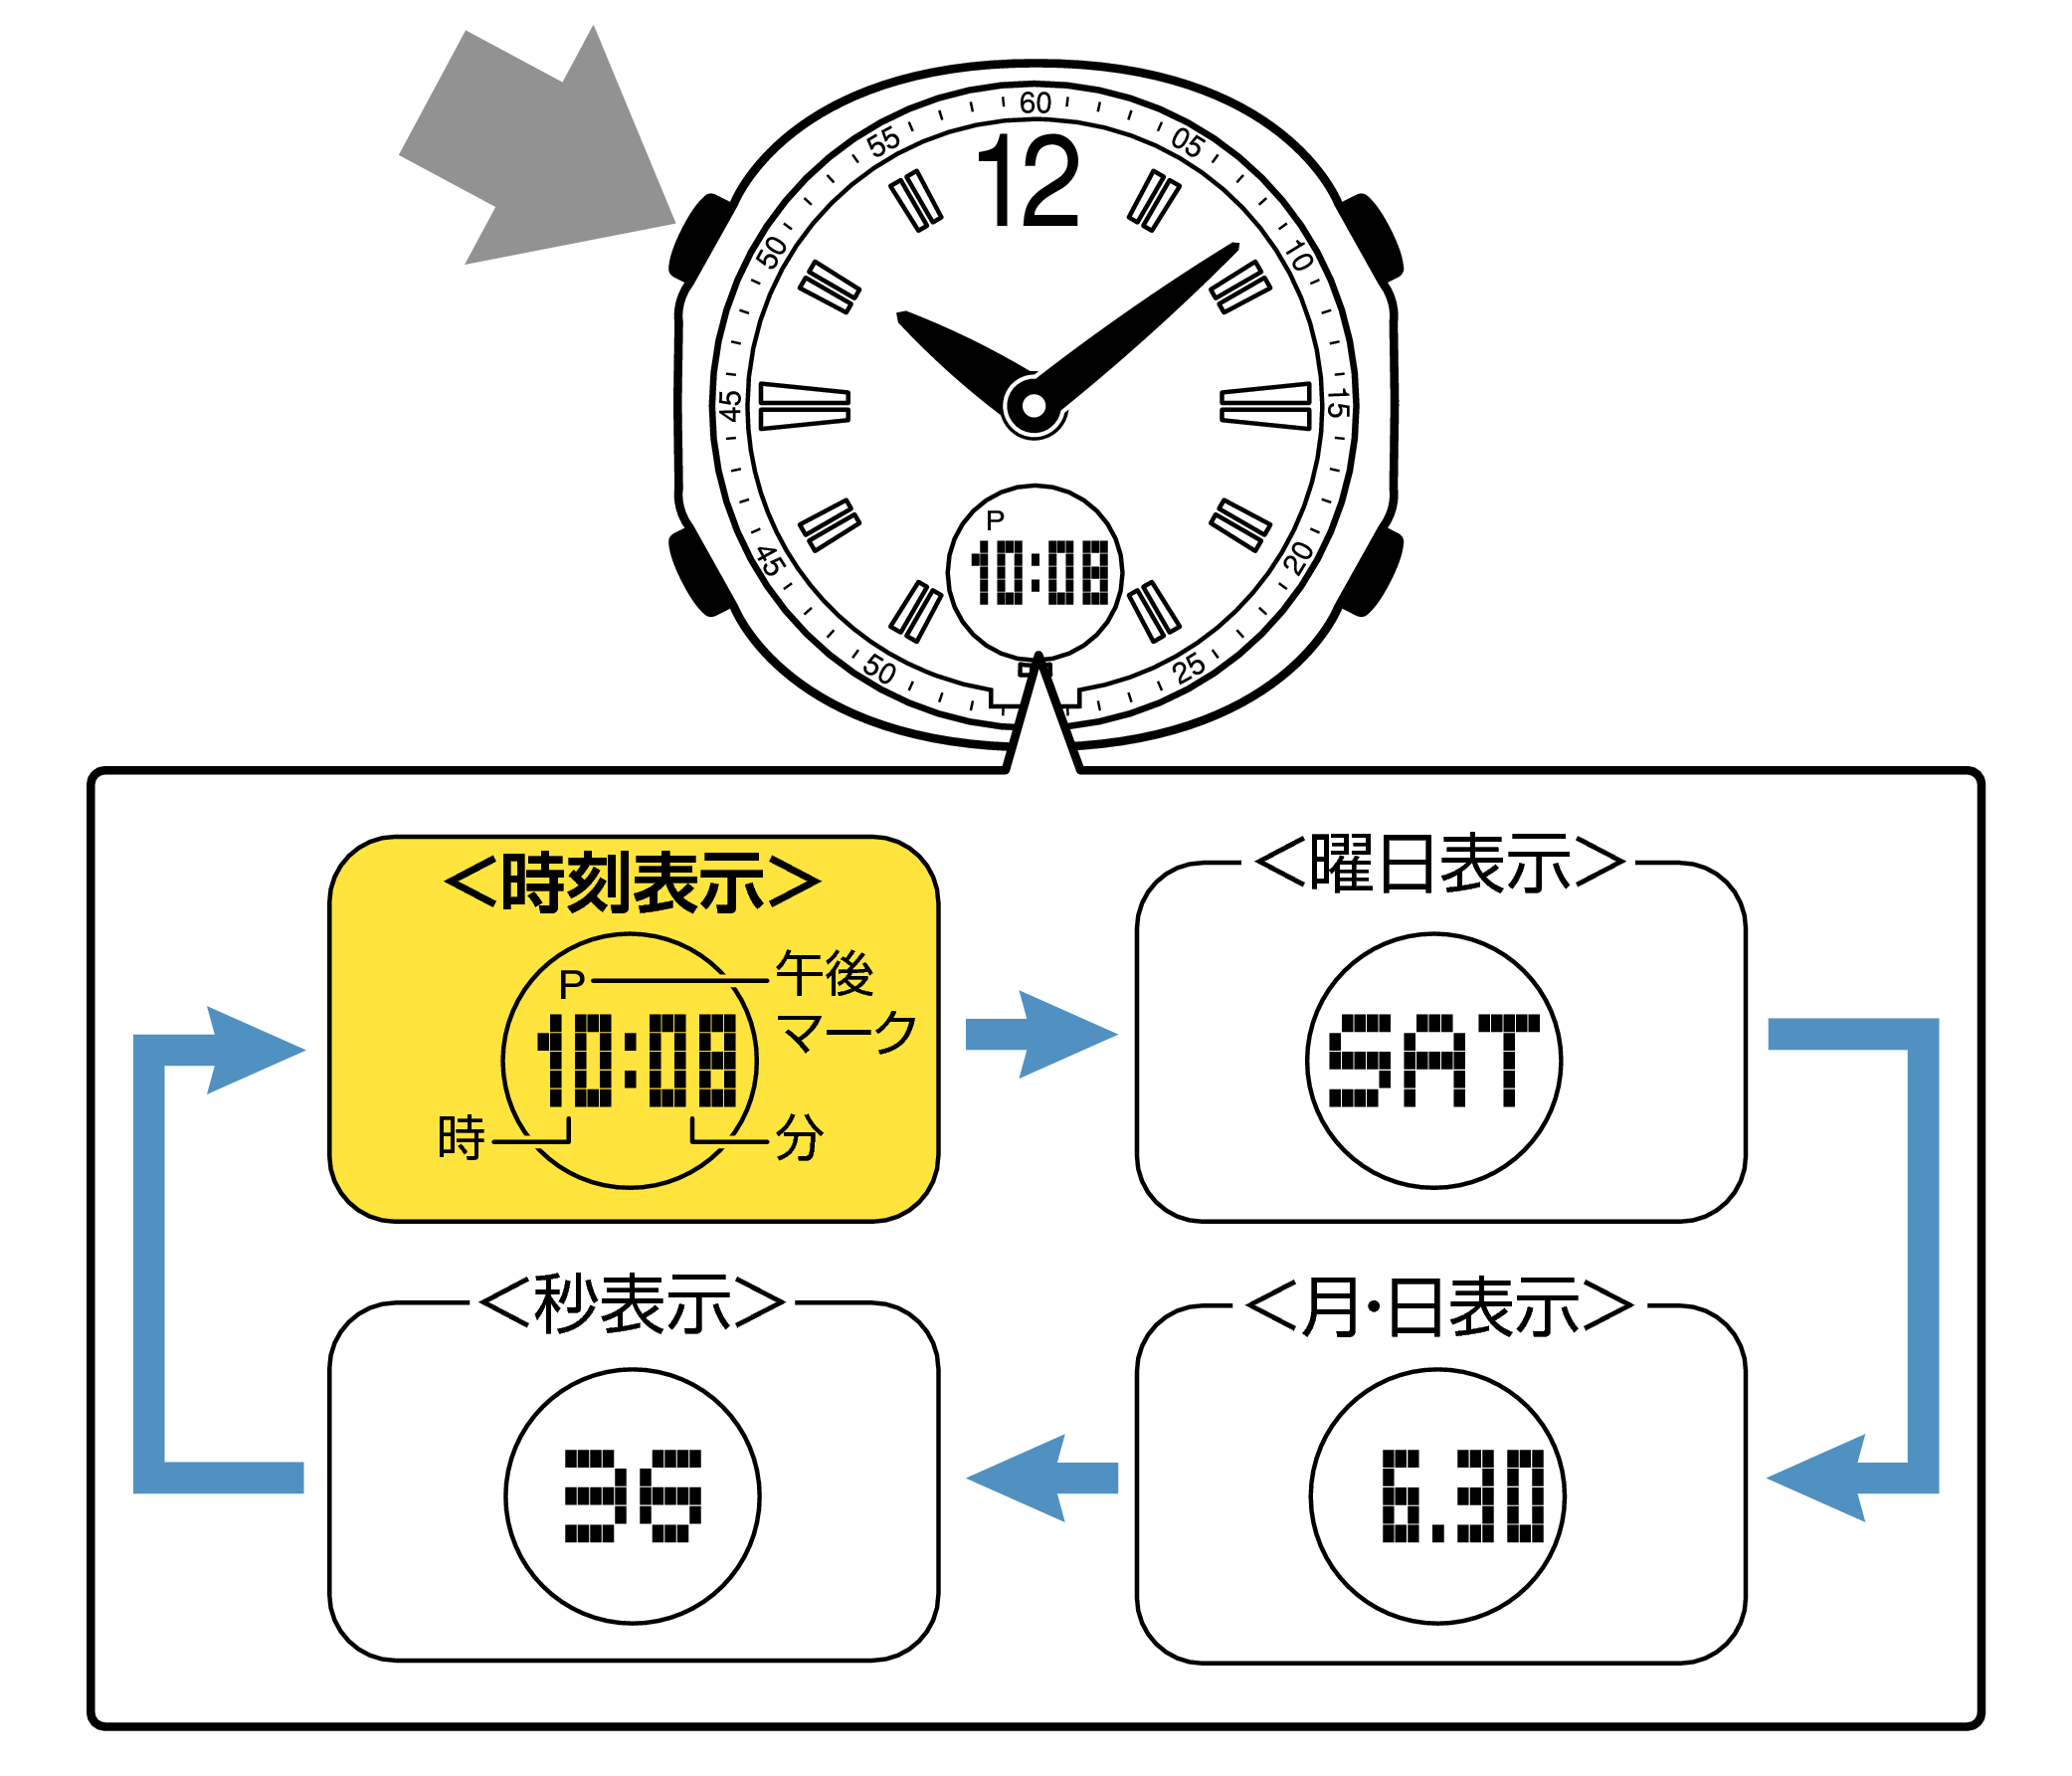 海外渡航時の時刻合わせ (5133)はじめに、現在の正しい時刻と合っているか確認します時刻合わせのページへ